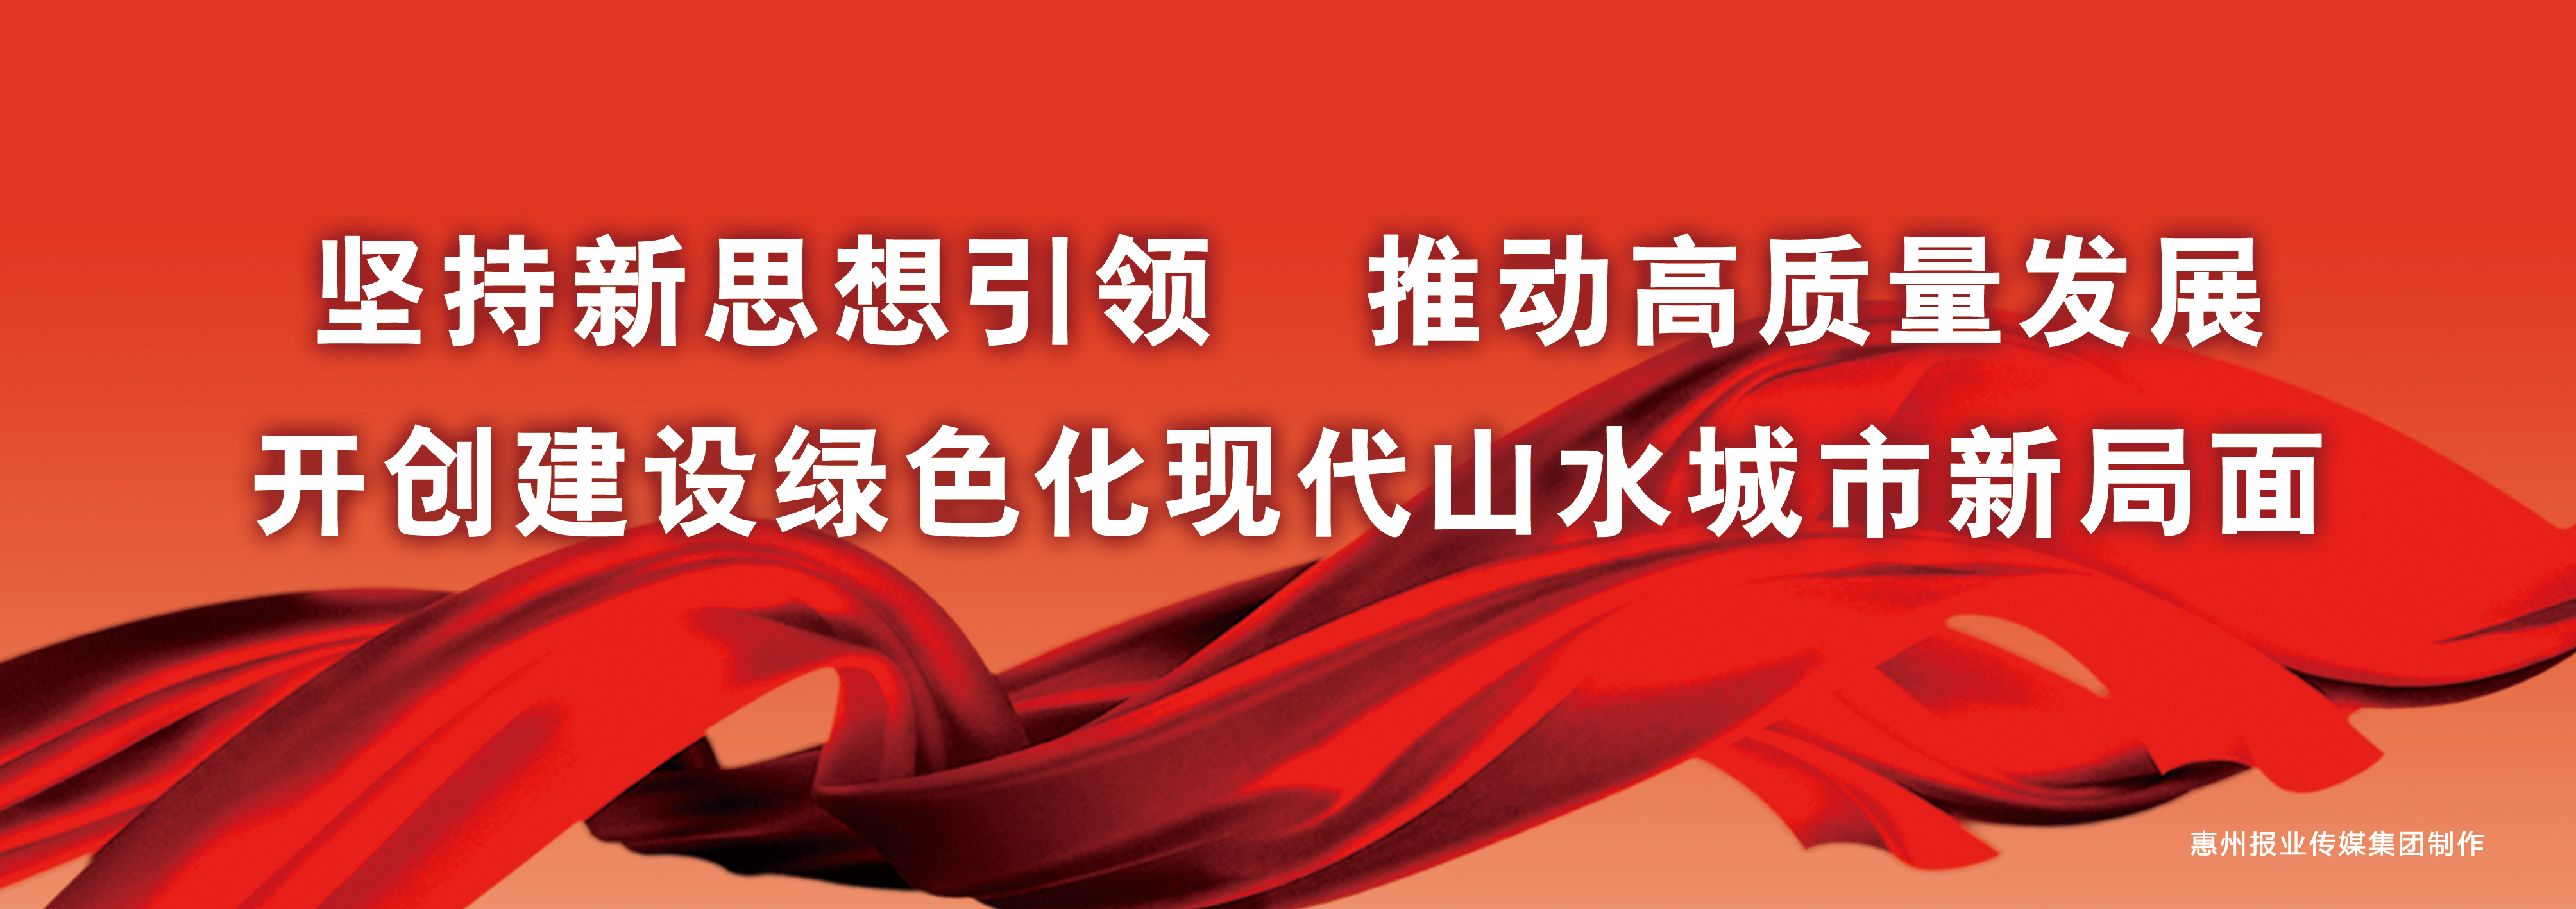 中国共产党惠州市第十一次代表大会标语